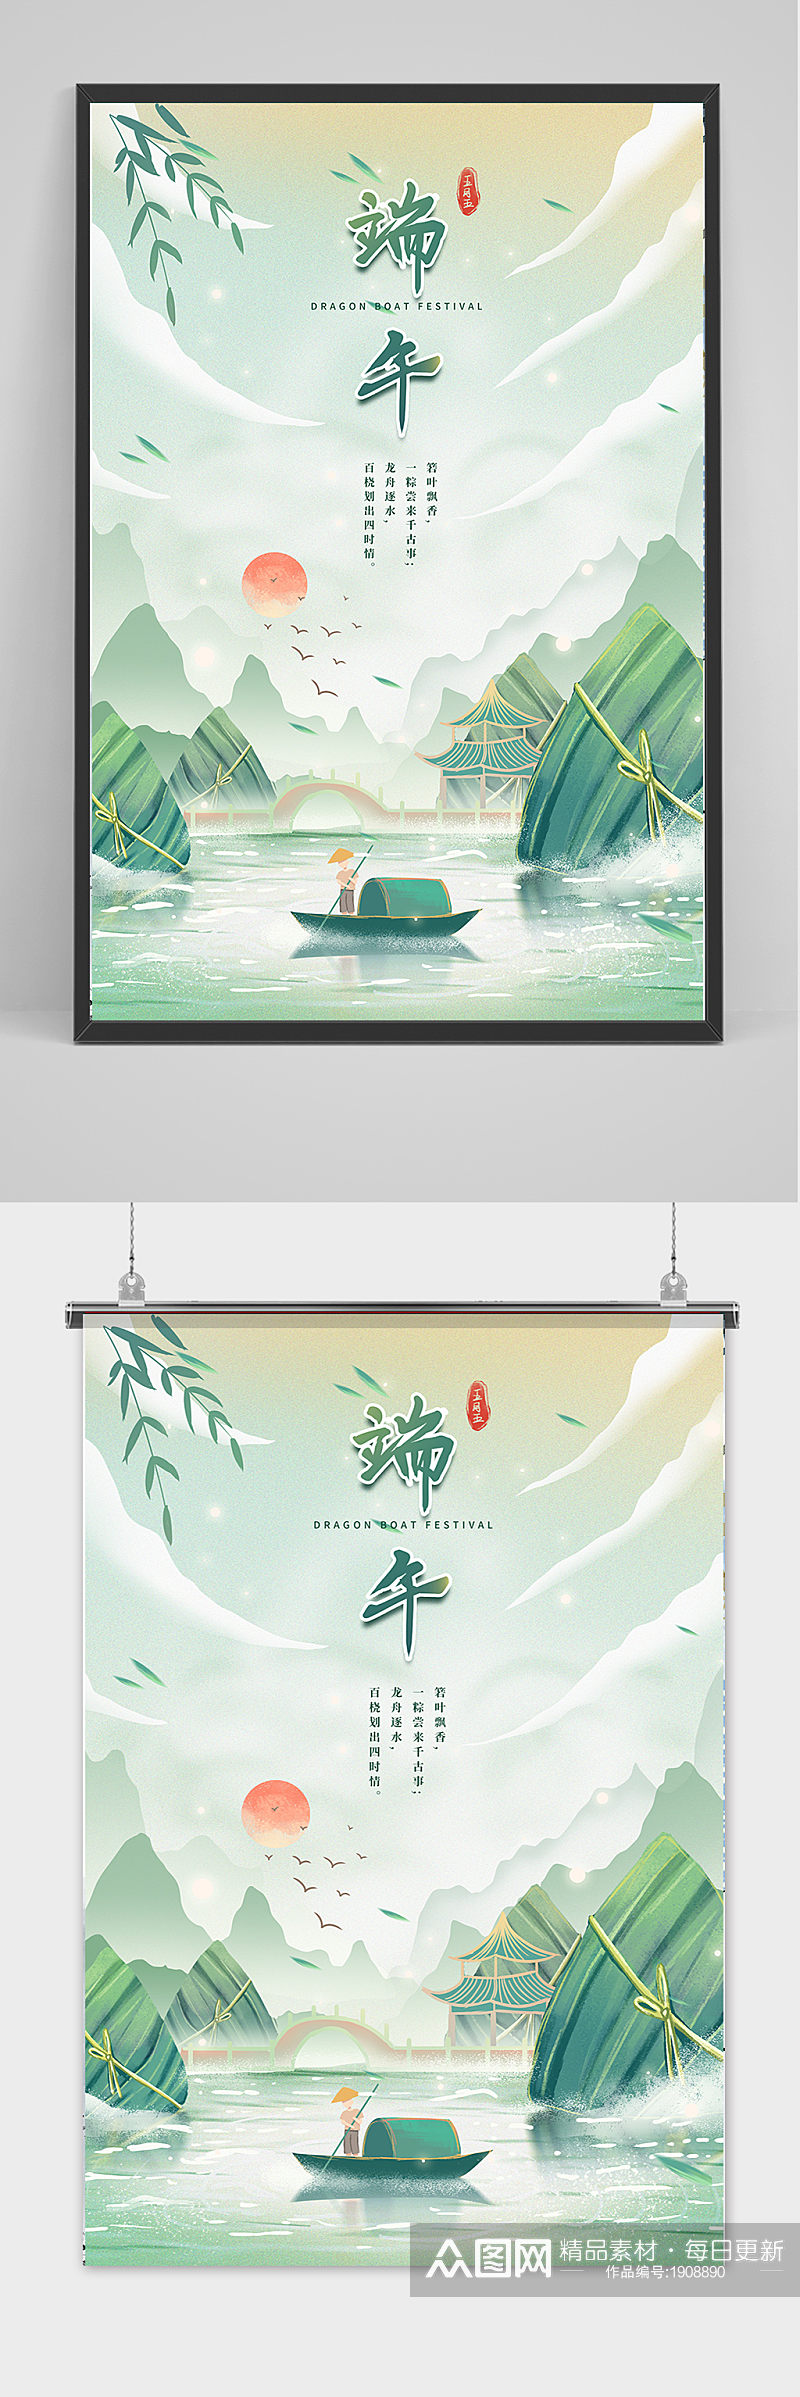 绿色清新中国风端午节海报素材图片大全大图素材